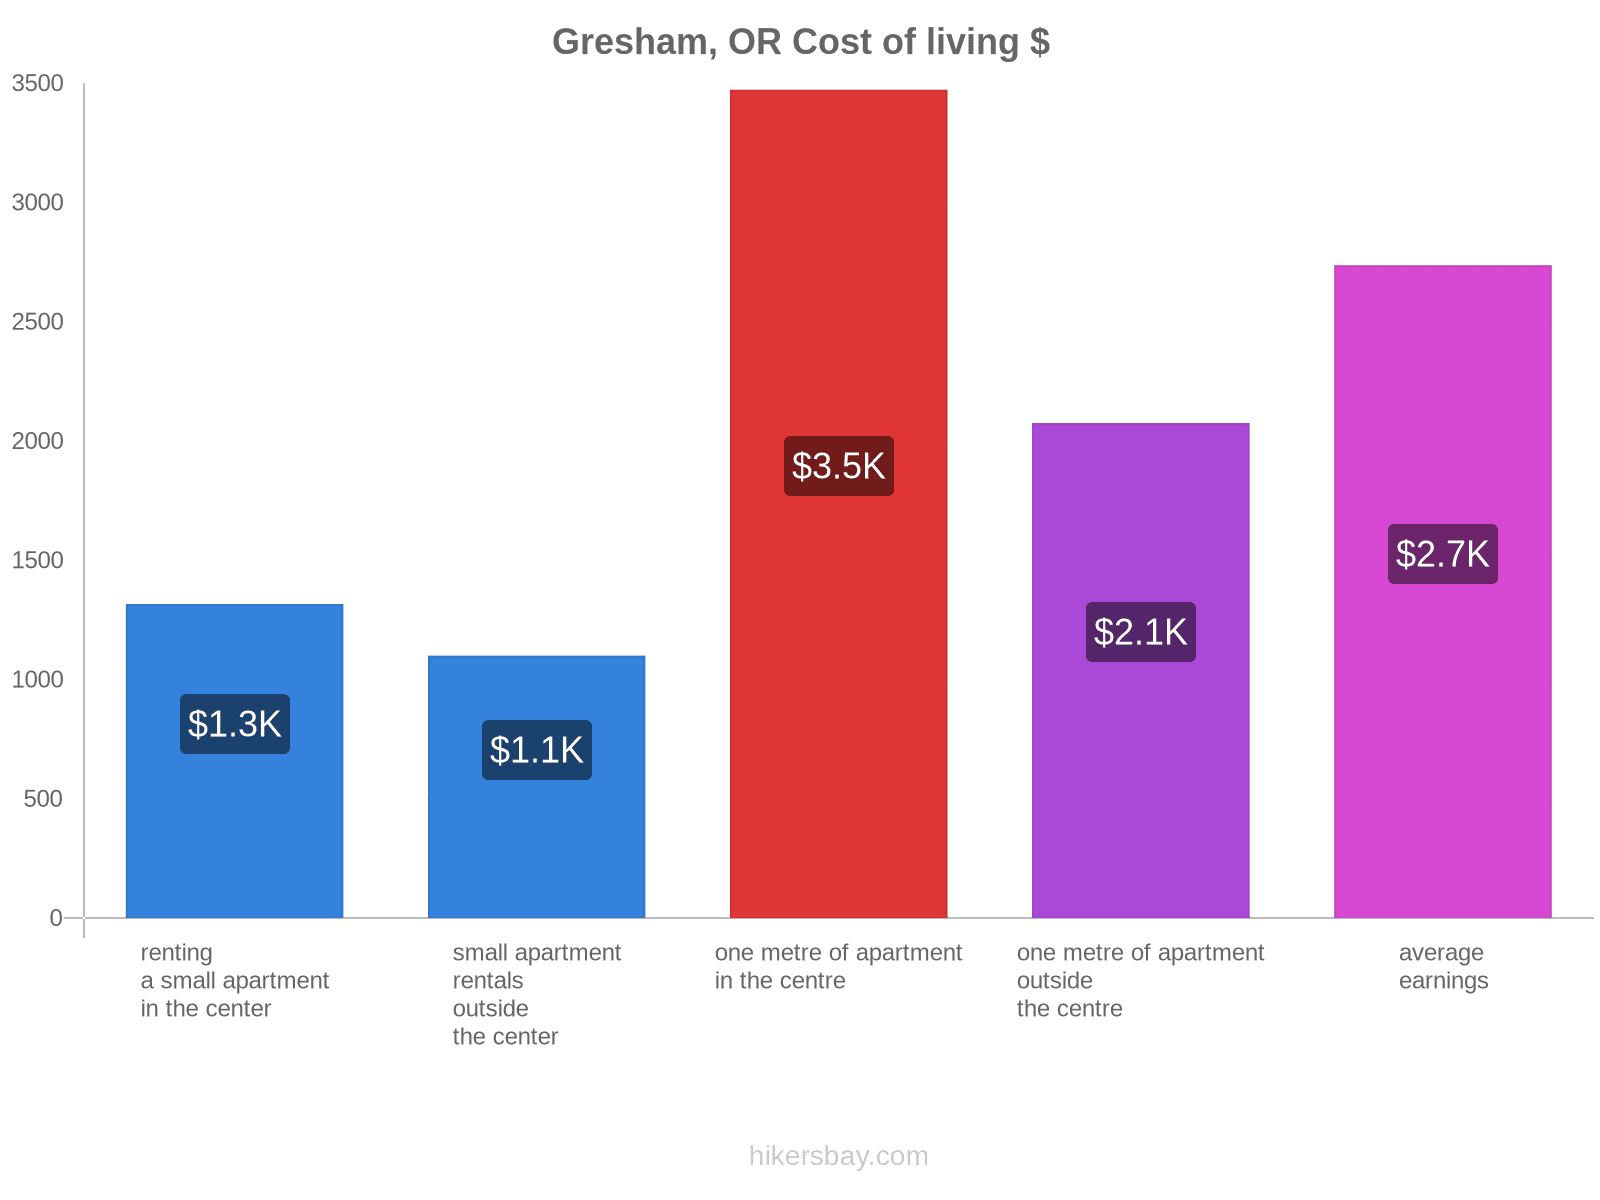 Gresham, OR cost of living hikersbay.com